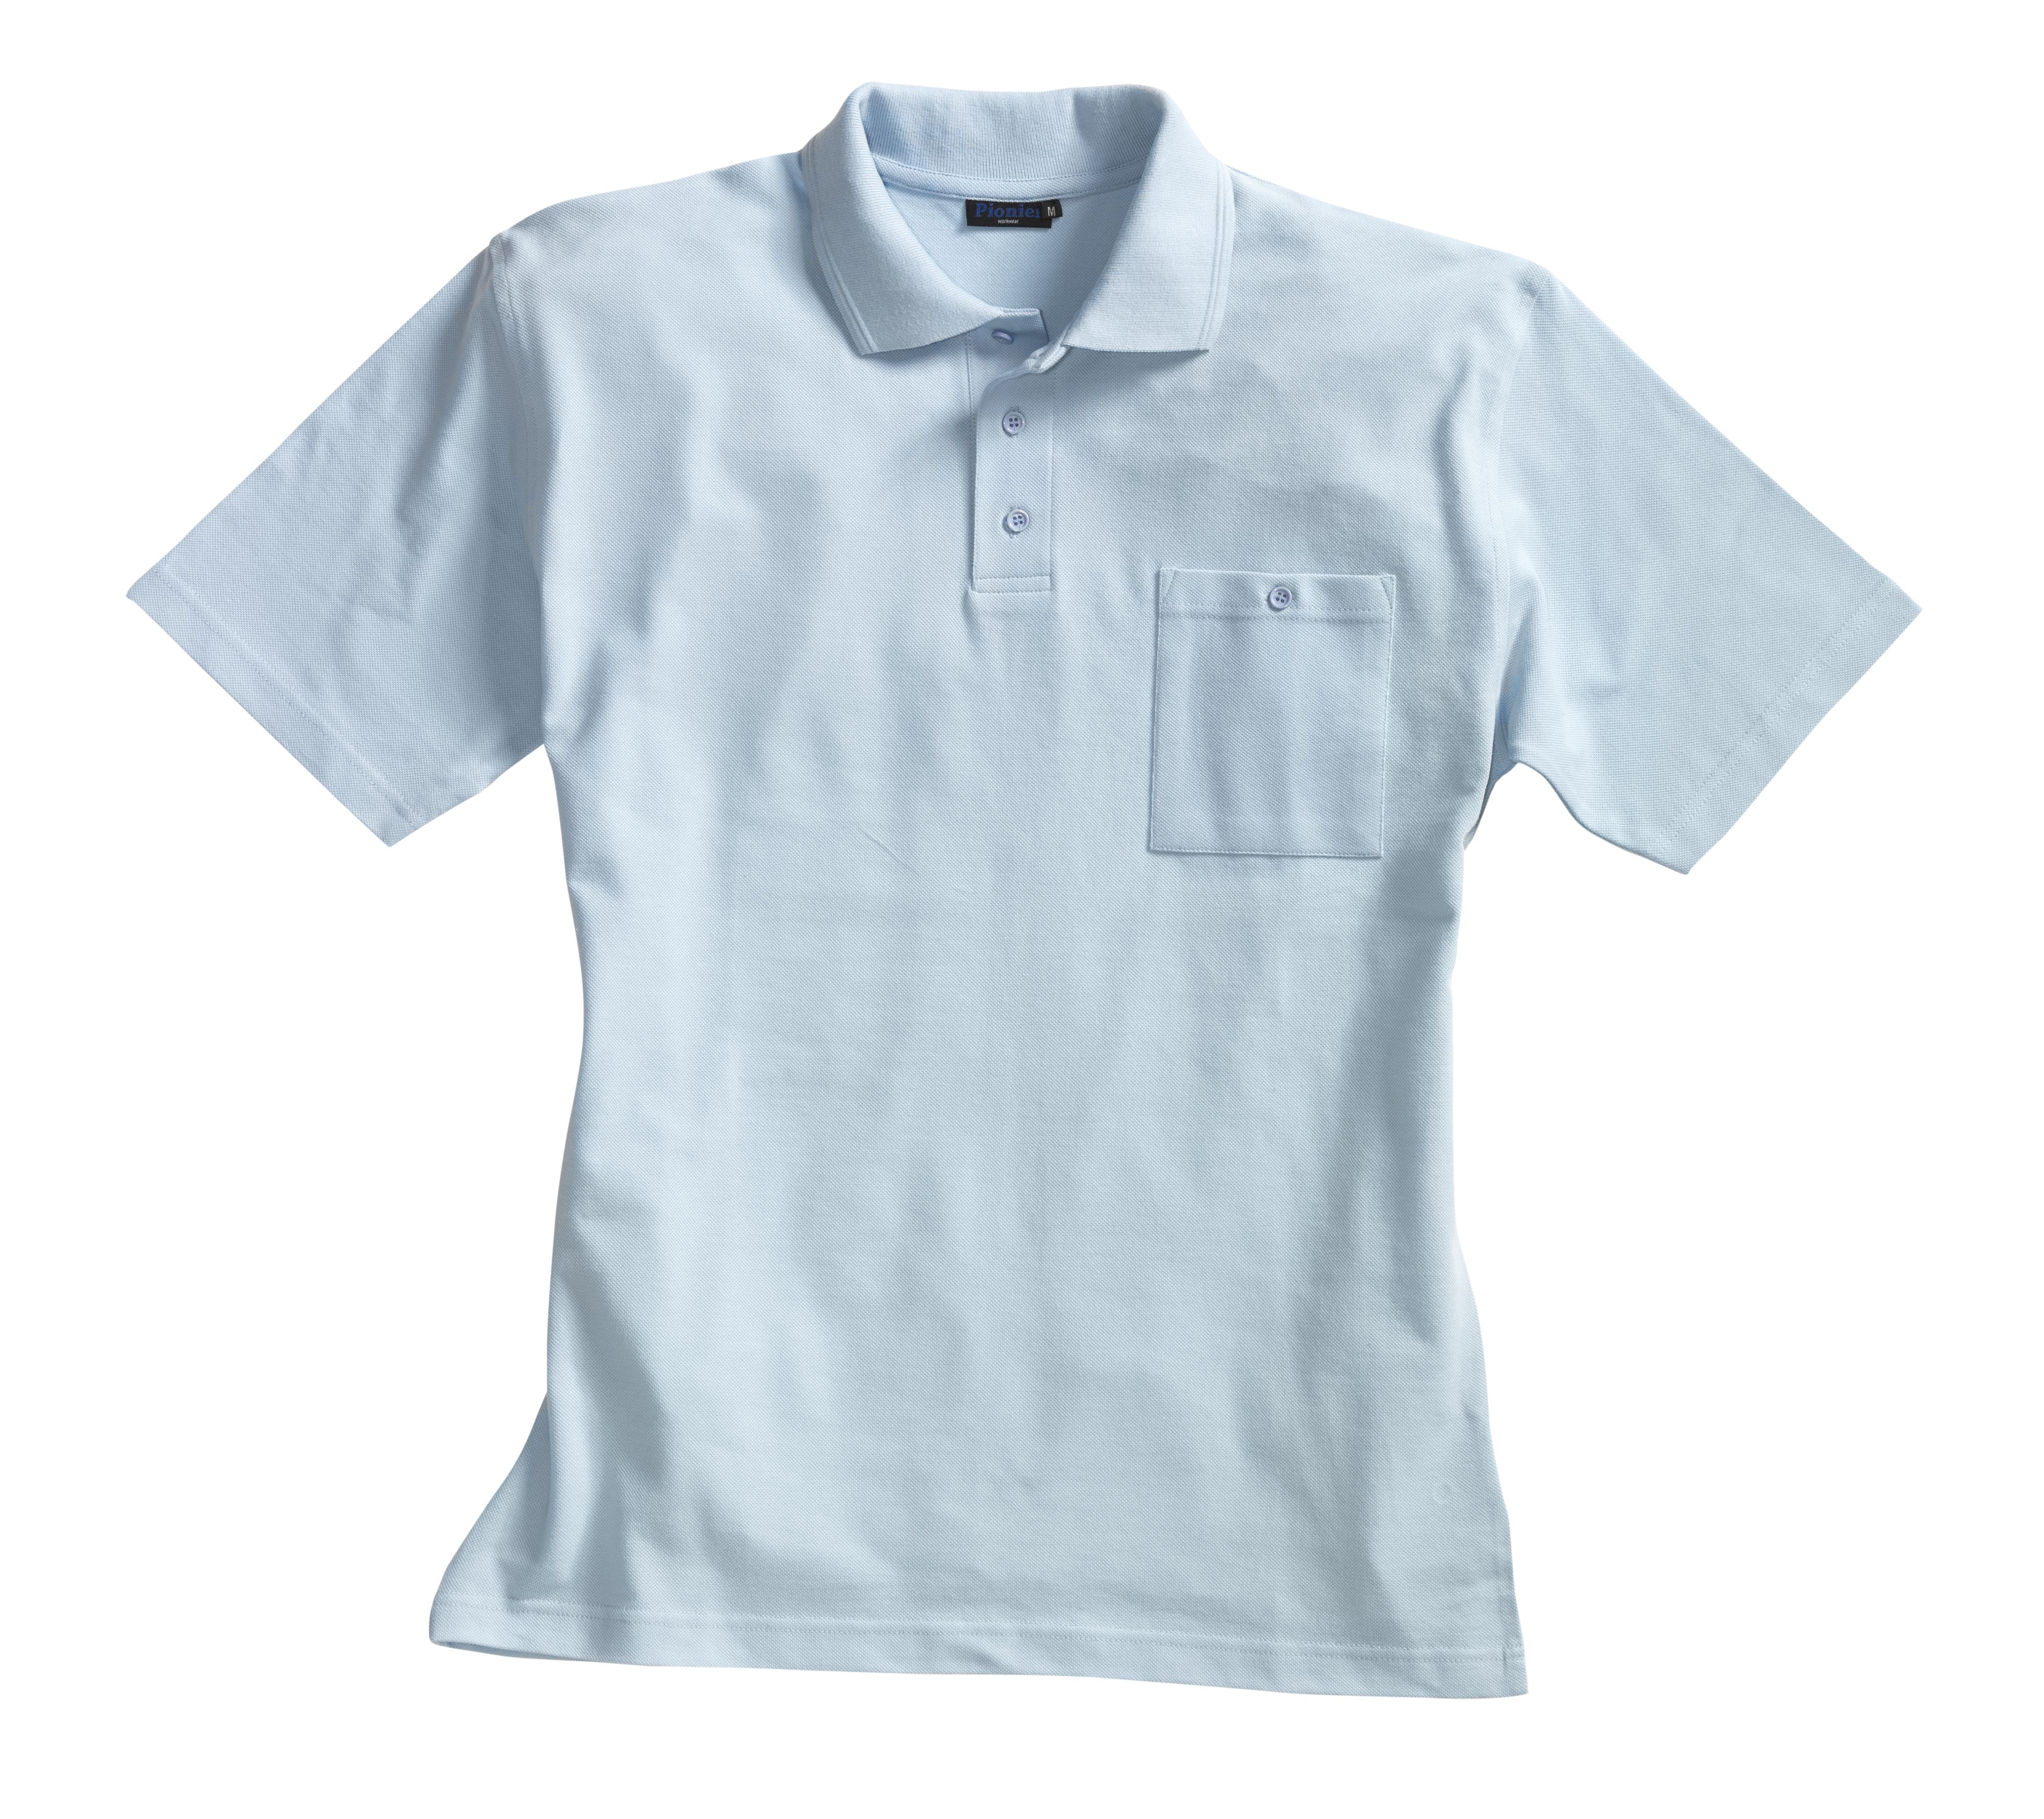 PIONIER Poloshirt Arbeitsshirt Berufsshirt Arbeitskleidung mit Brusttasche Pique, hellblau